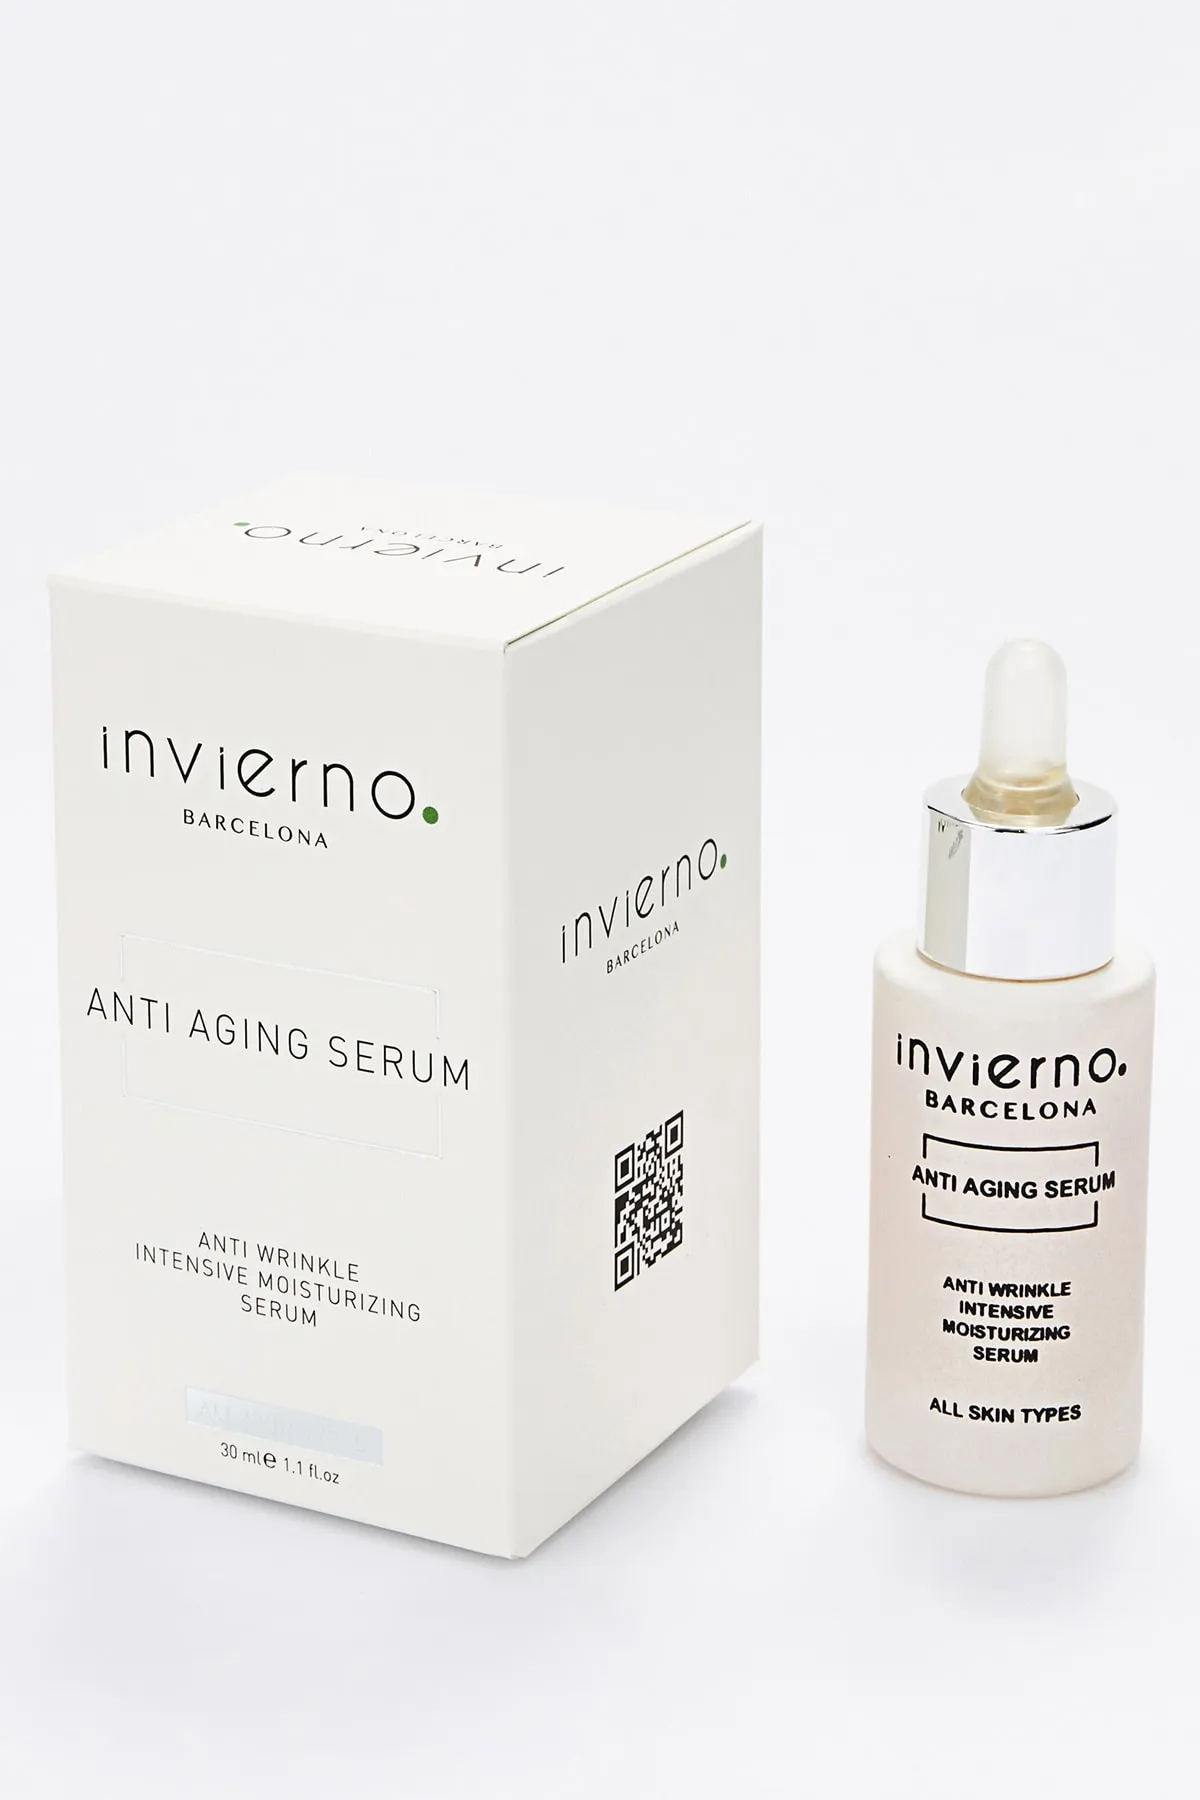 Invierno Anti Aging Serum 30 ml - 1